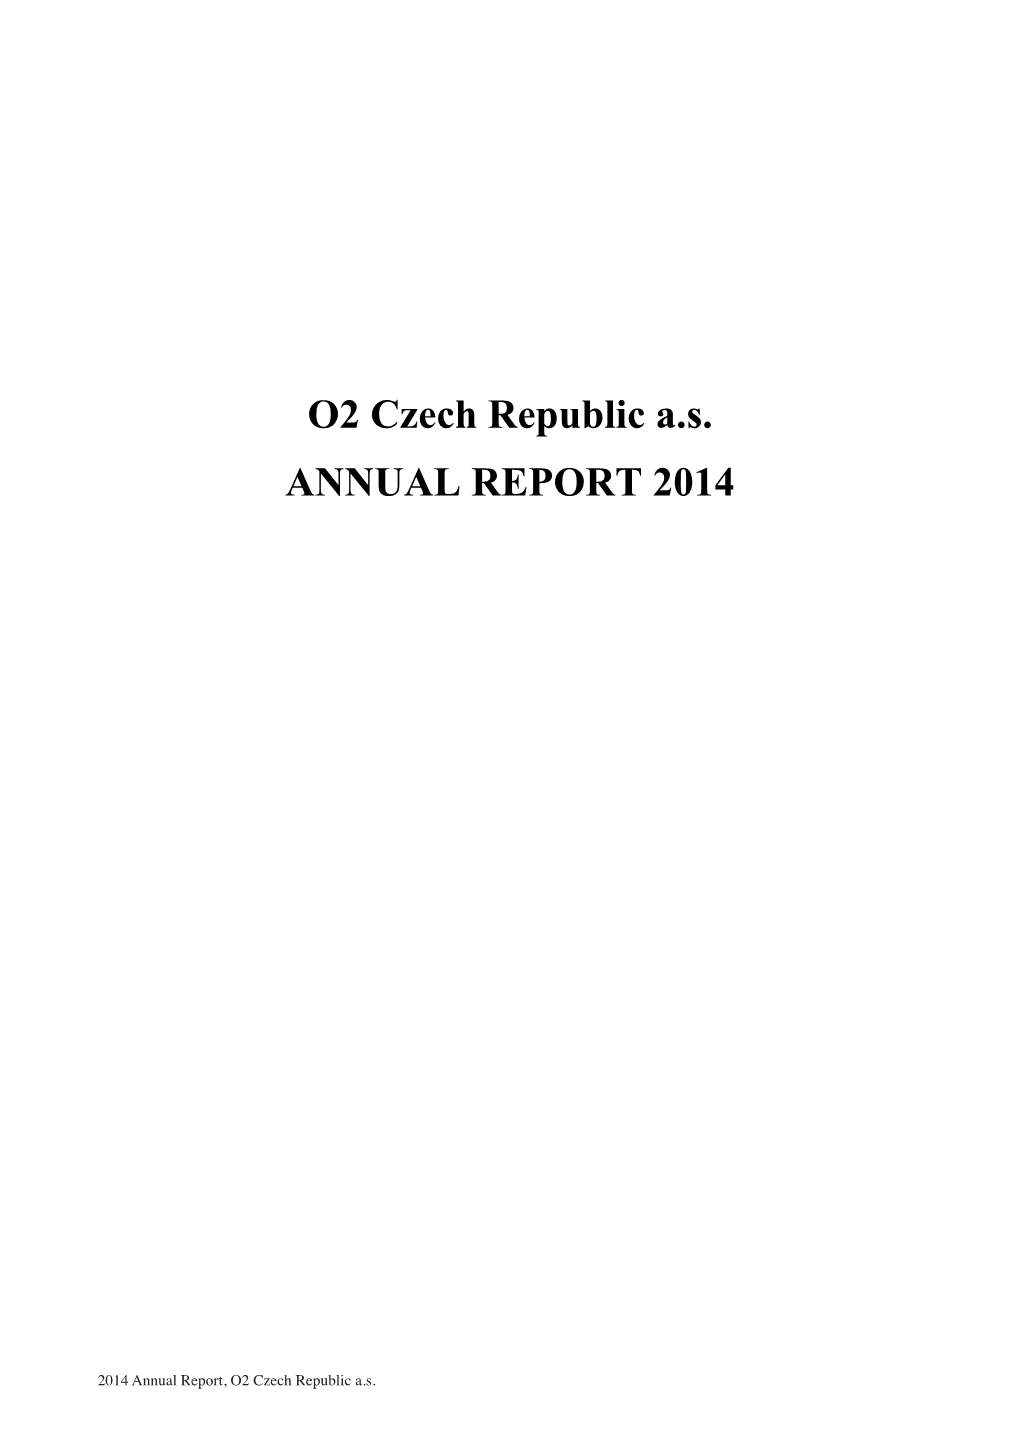 O2 Czech Republic A.S. ANNUAL REPORT 2014